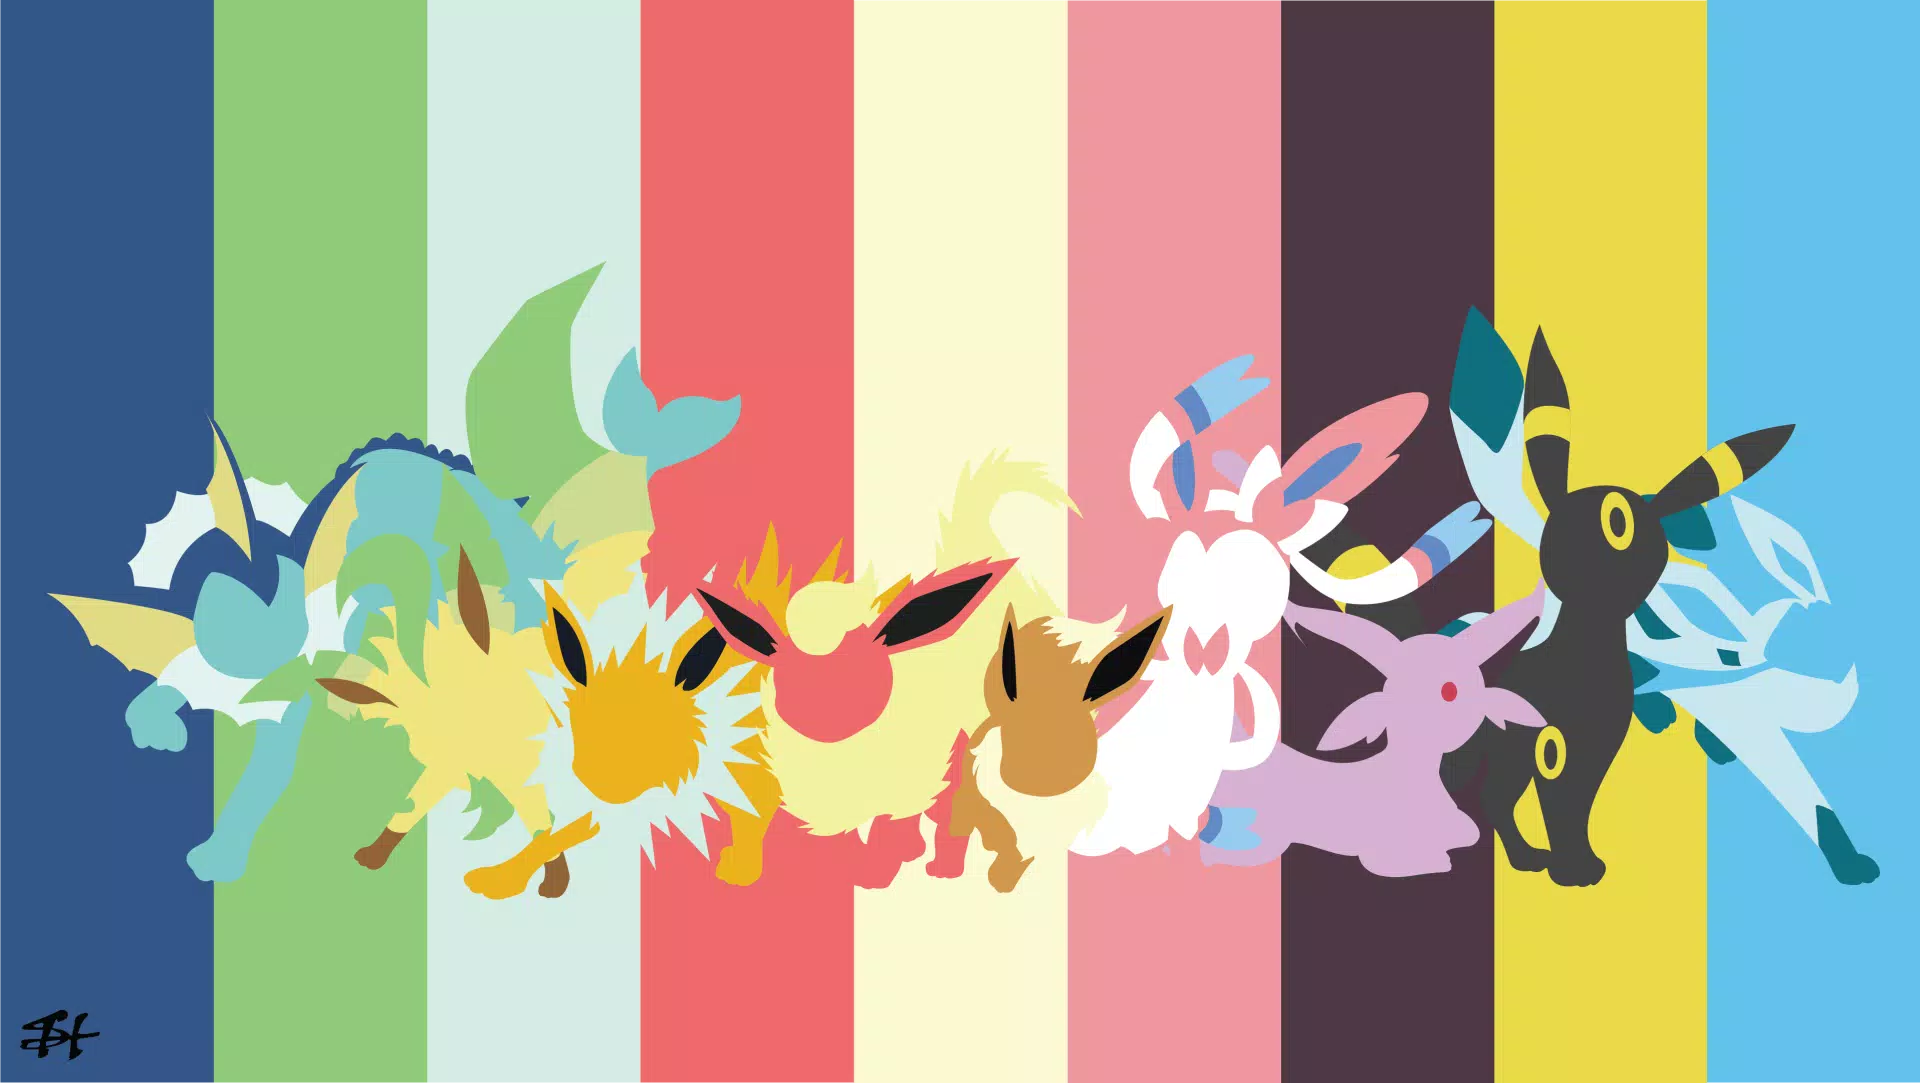 Pokemon Wallpaper - Imagens de fundo Pokemon APK voor Android Download